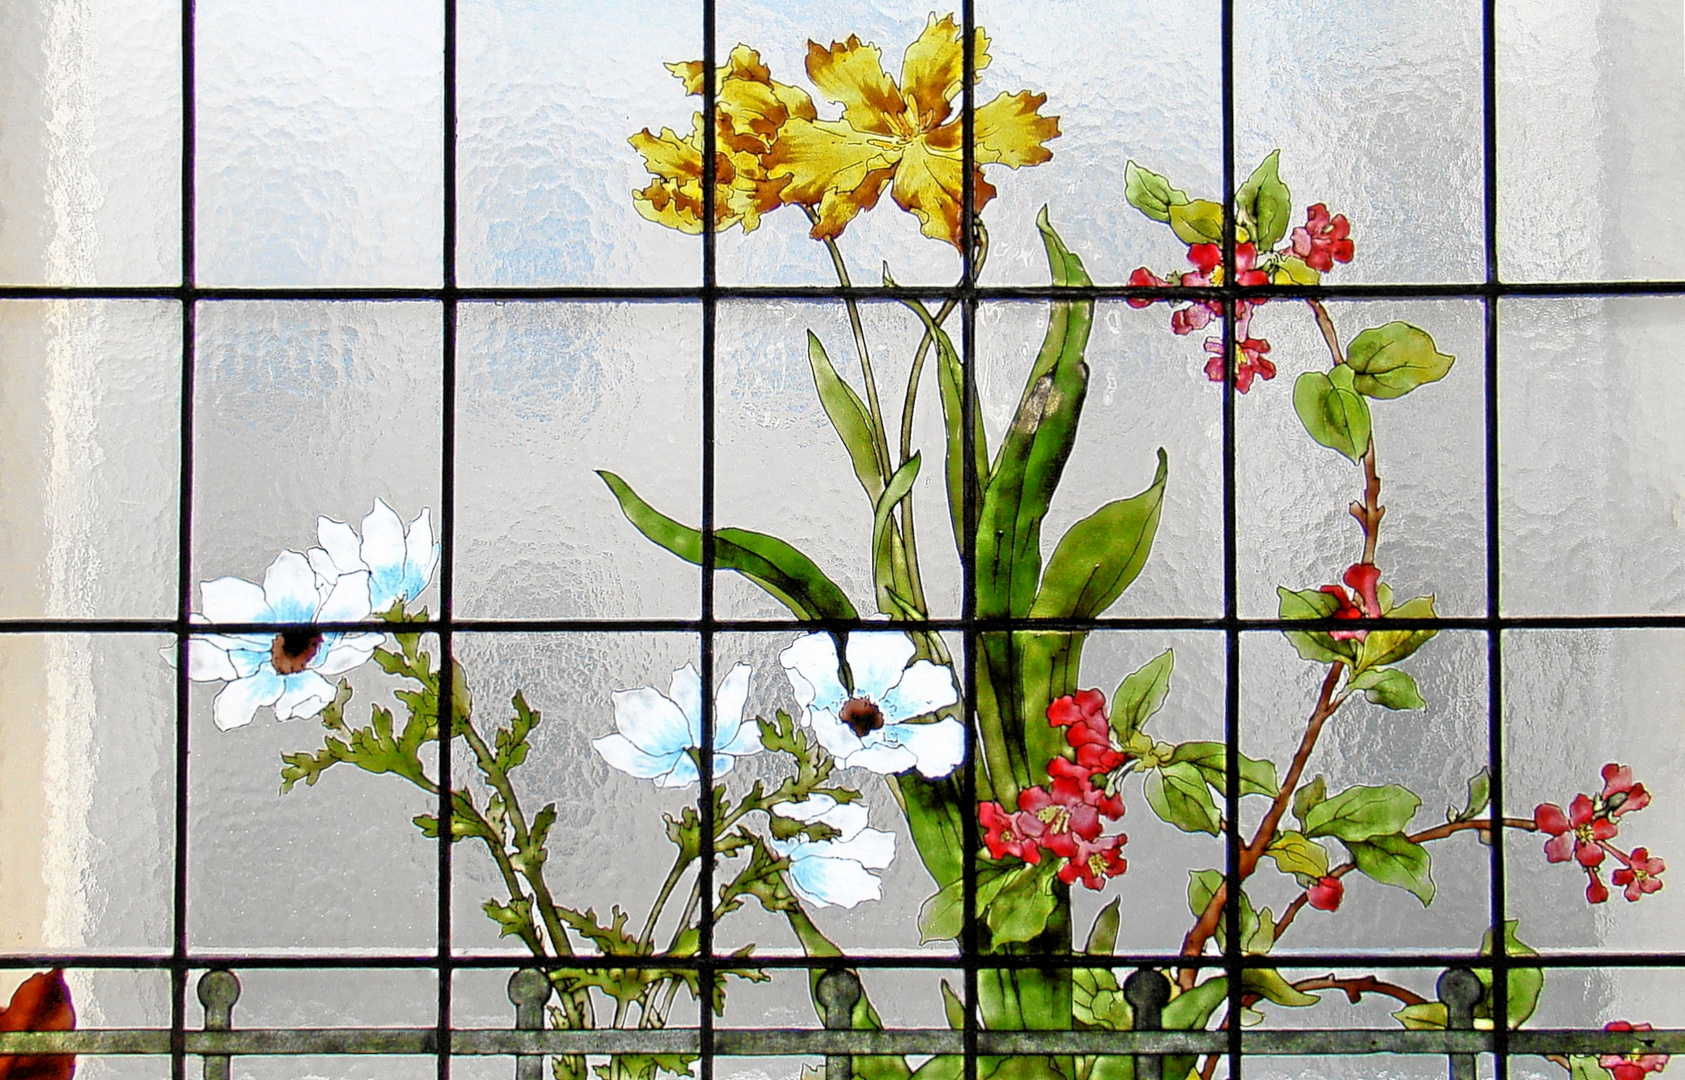 Mittwochsblümchen am Fensterglas